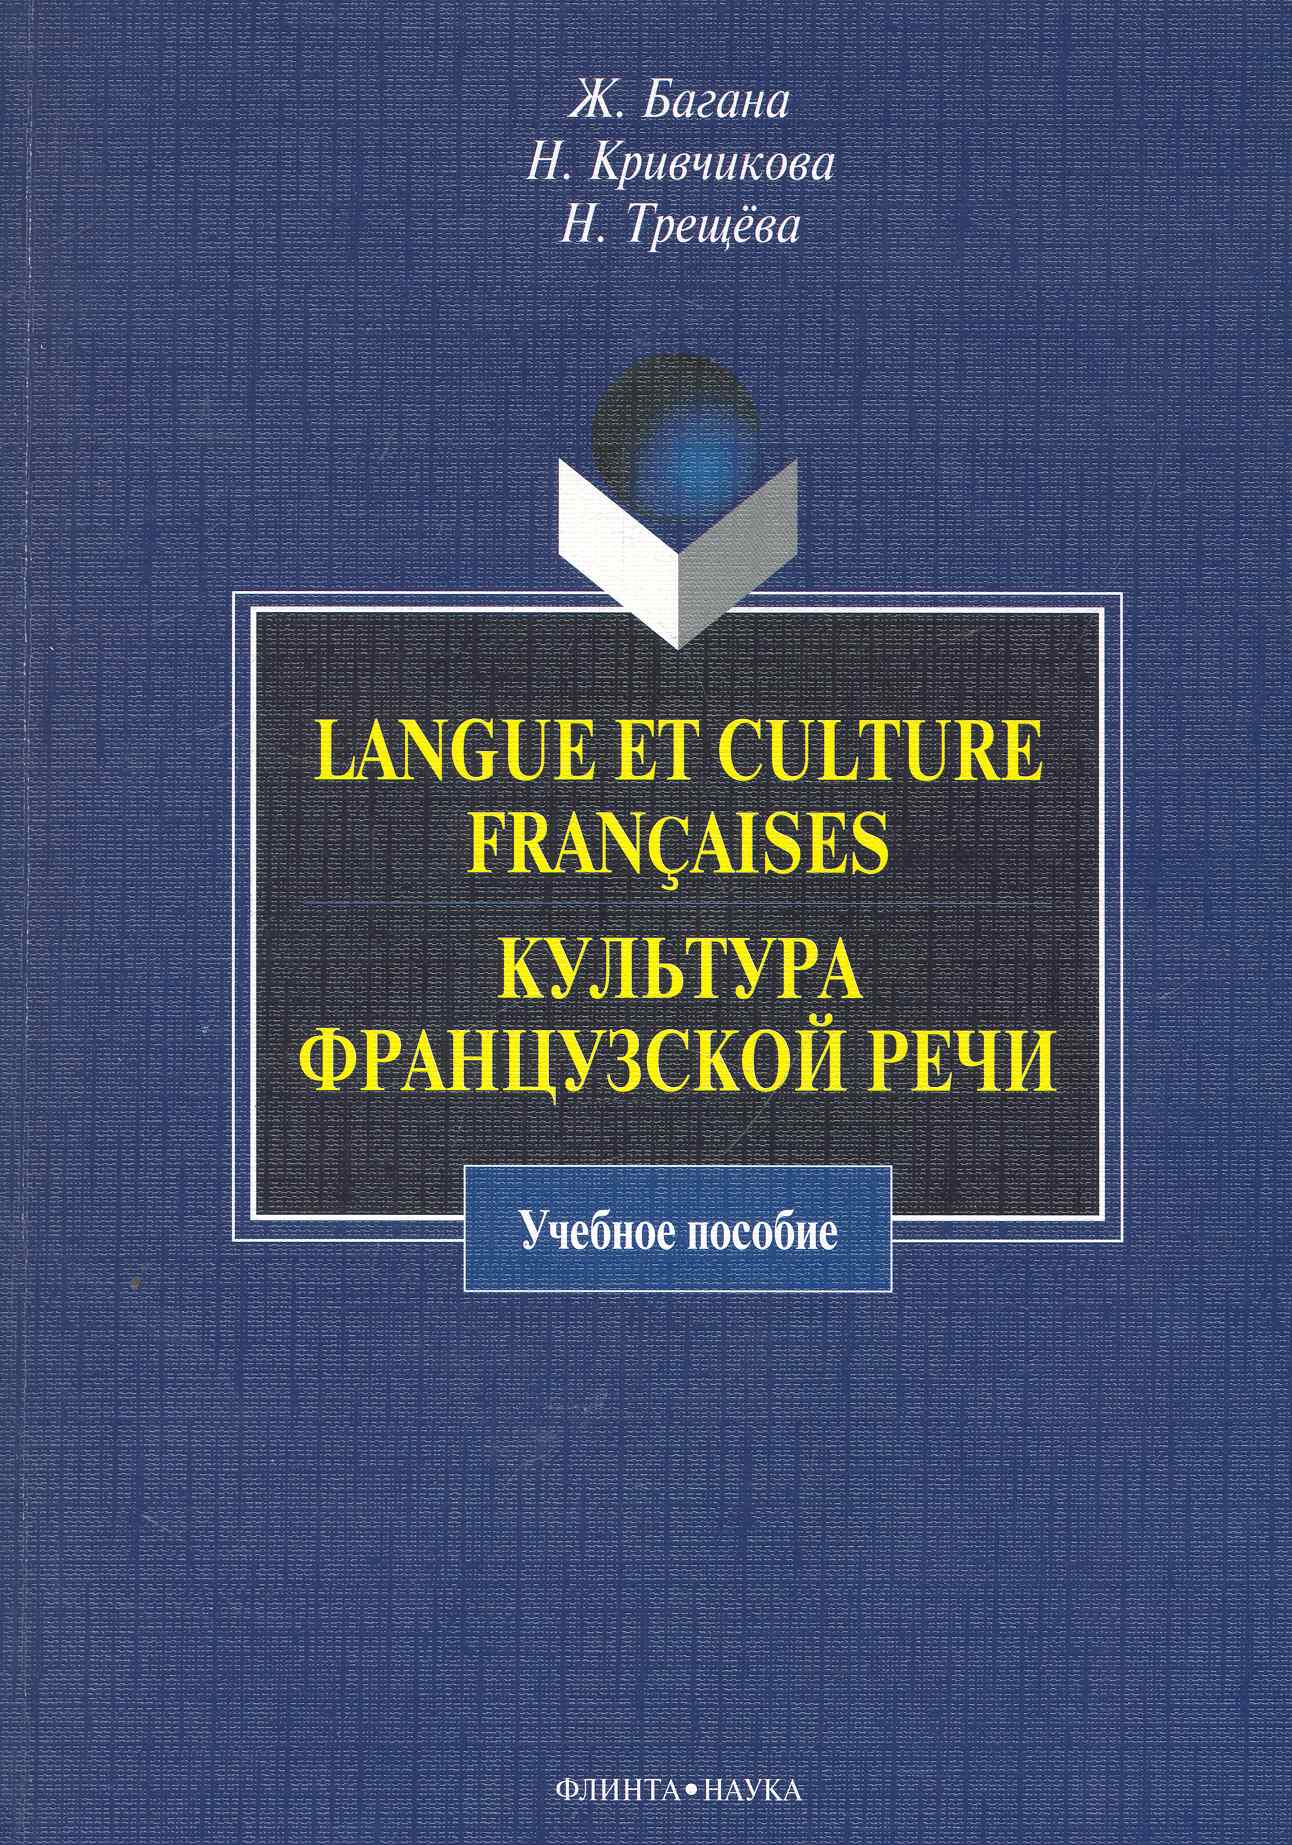 Langue et culture francaises.    :  